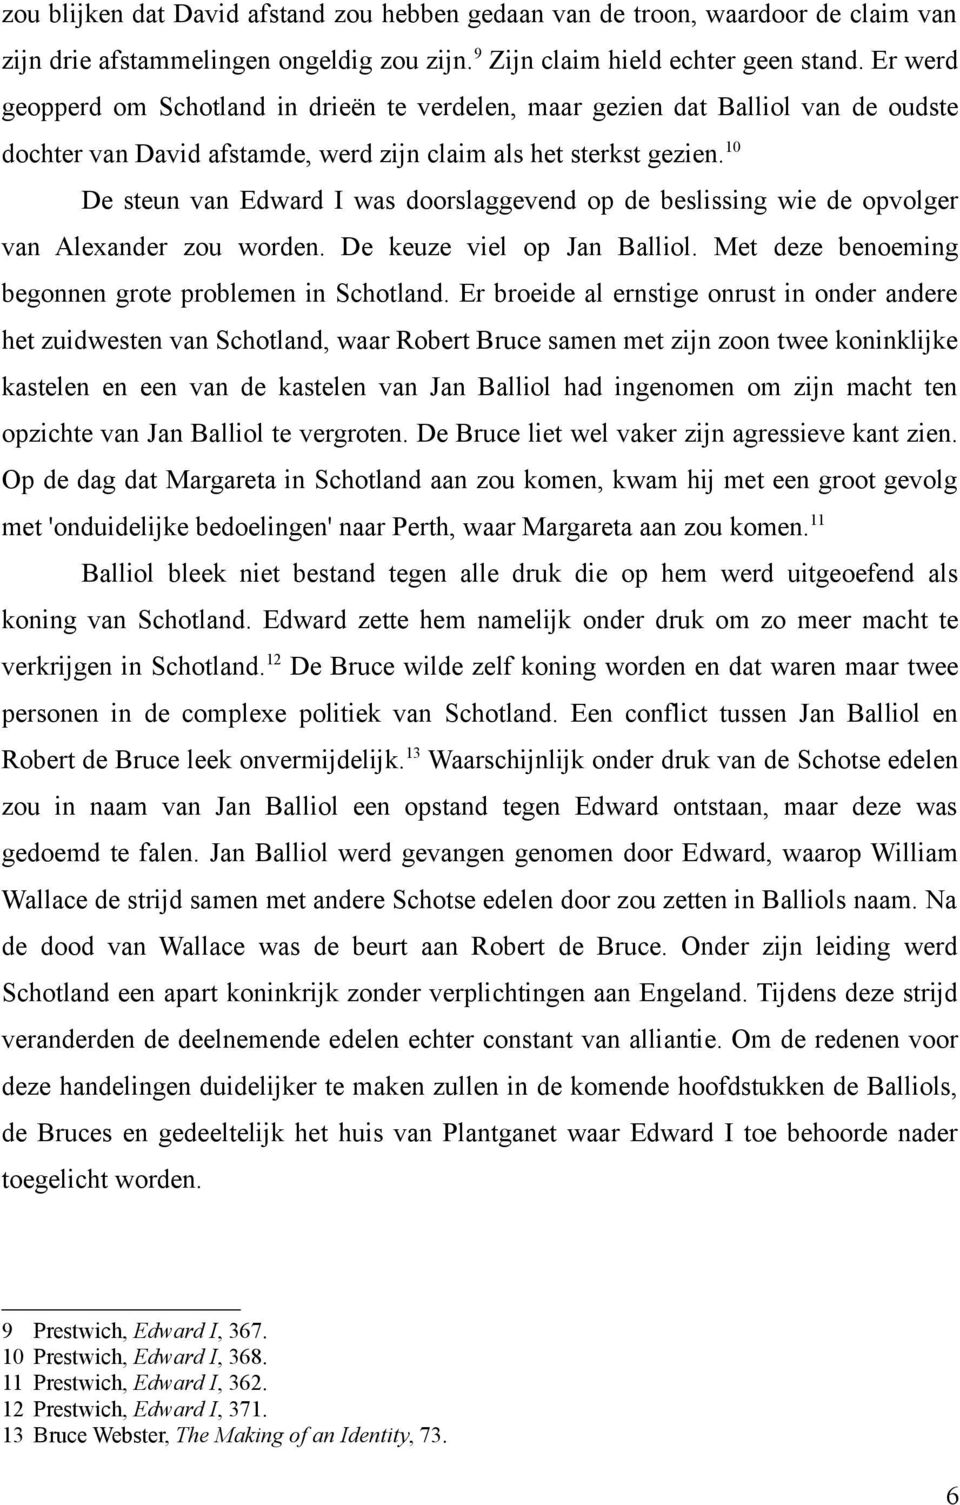 10 De steun van Edward I was doorslaggevend op de beslissing wie de opvolger van Alexander zou worden. De keuze viel op Jan Balliol. Met deze benoeming begonnen grote problemen in Schotland.